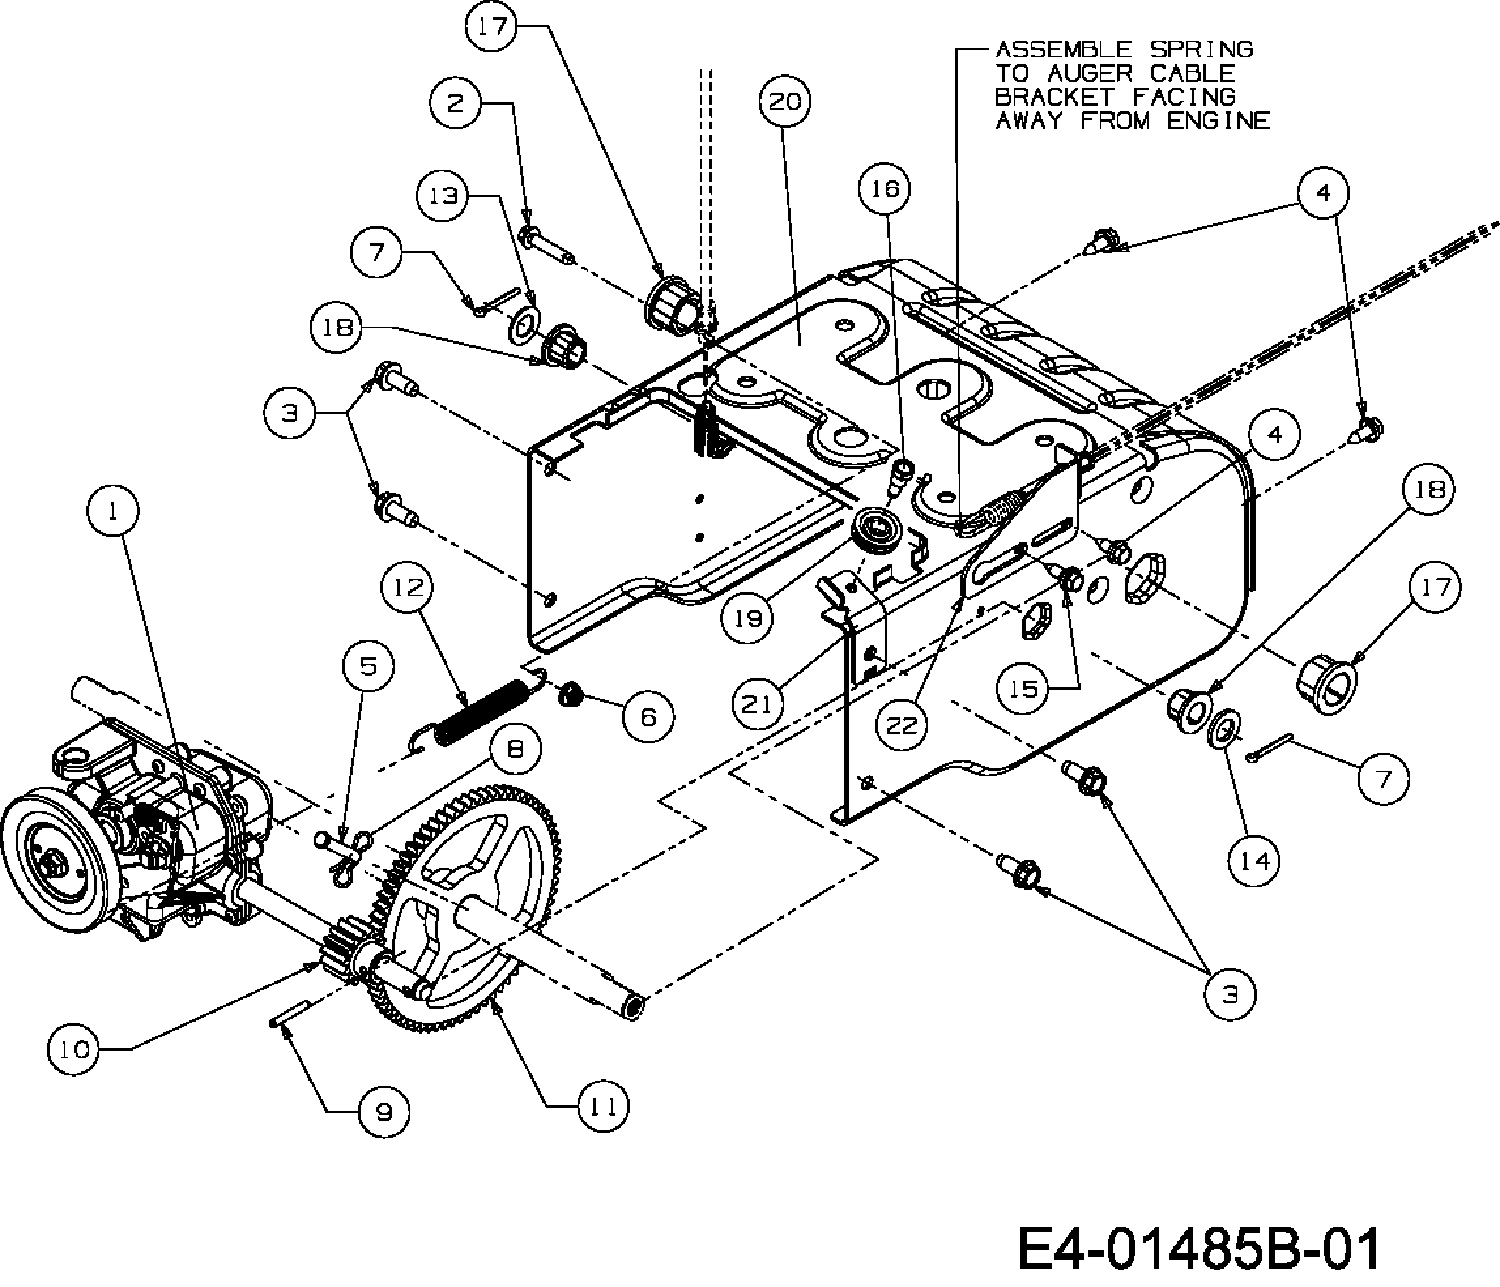 Getriebe, 31A-32AD678 (2008), ST 380 D, Schneefräsen, MTD